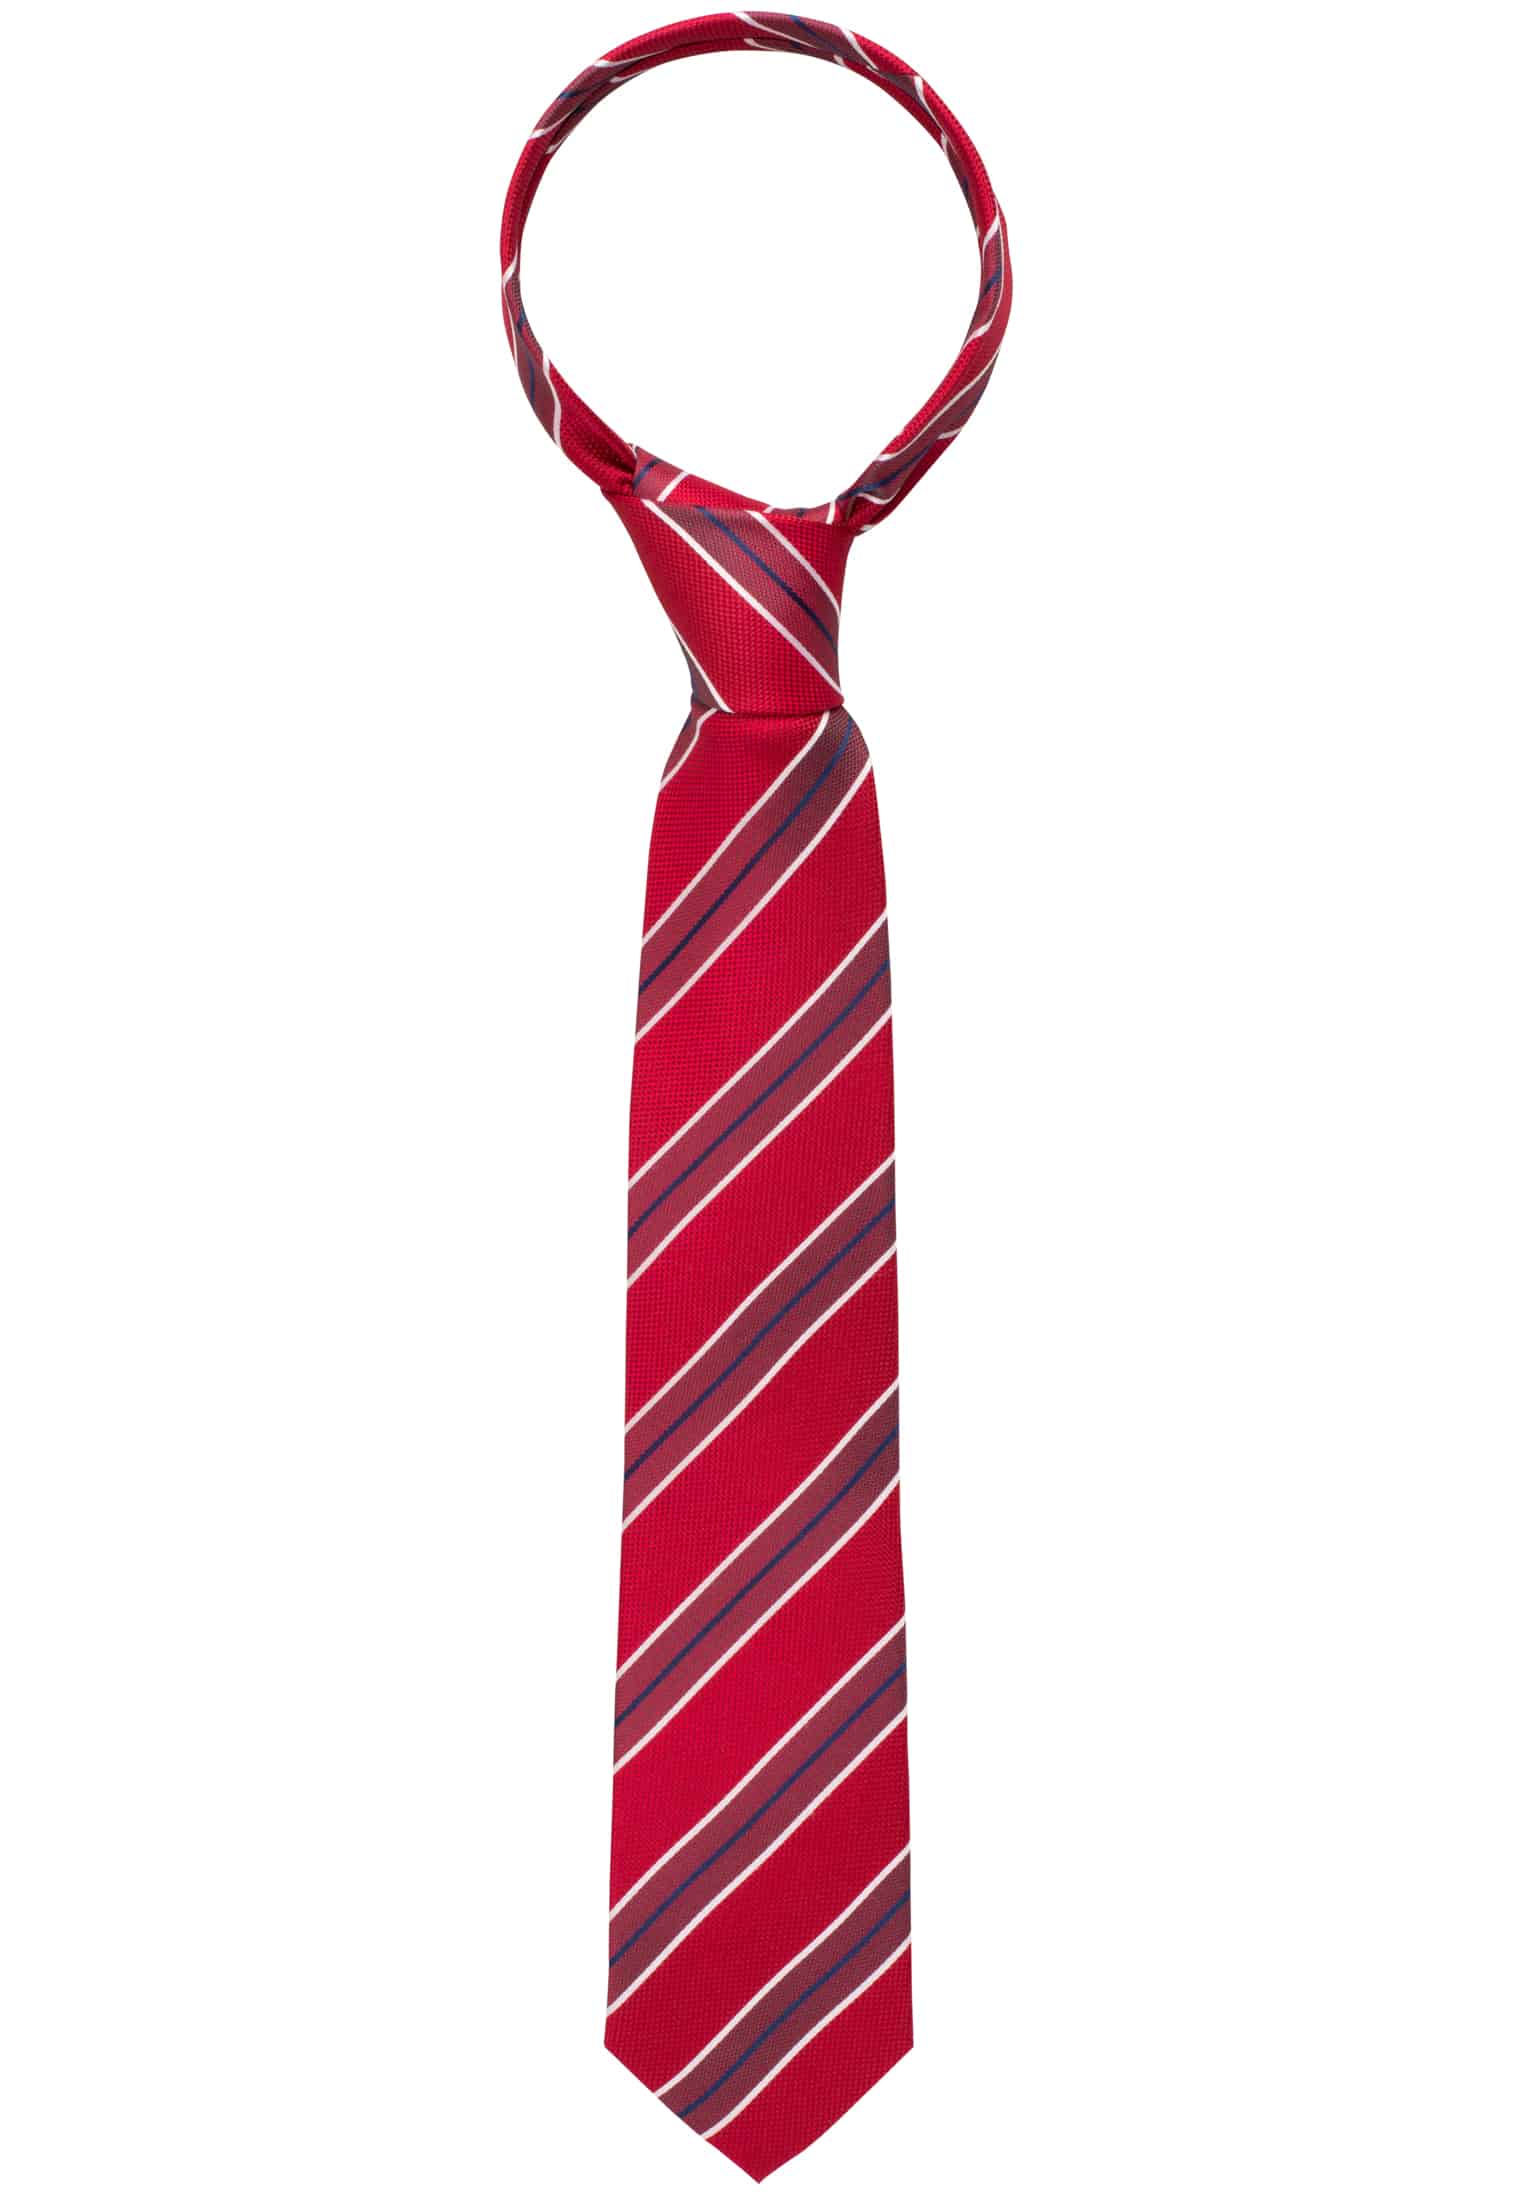 Krawatte in rot gestreift 142 rot | | 1AC00533-05-01-142 